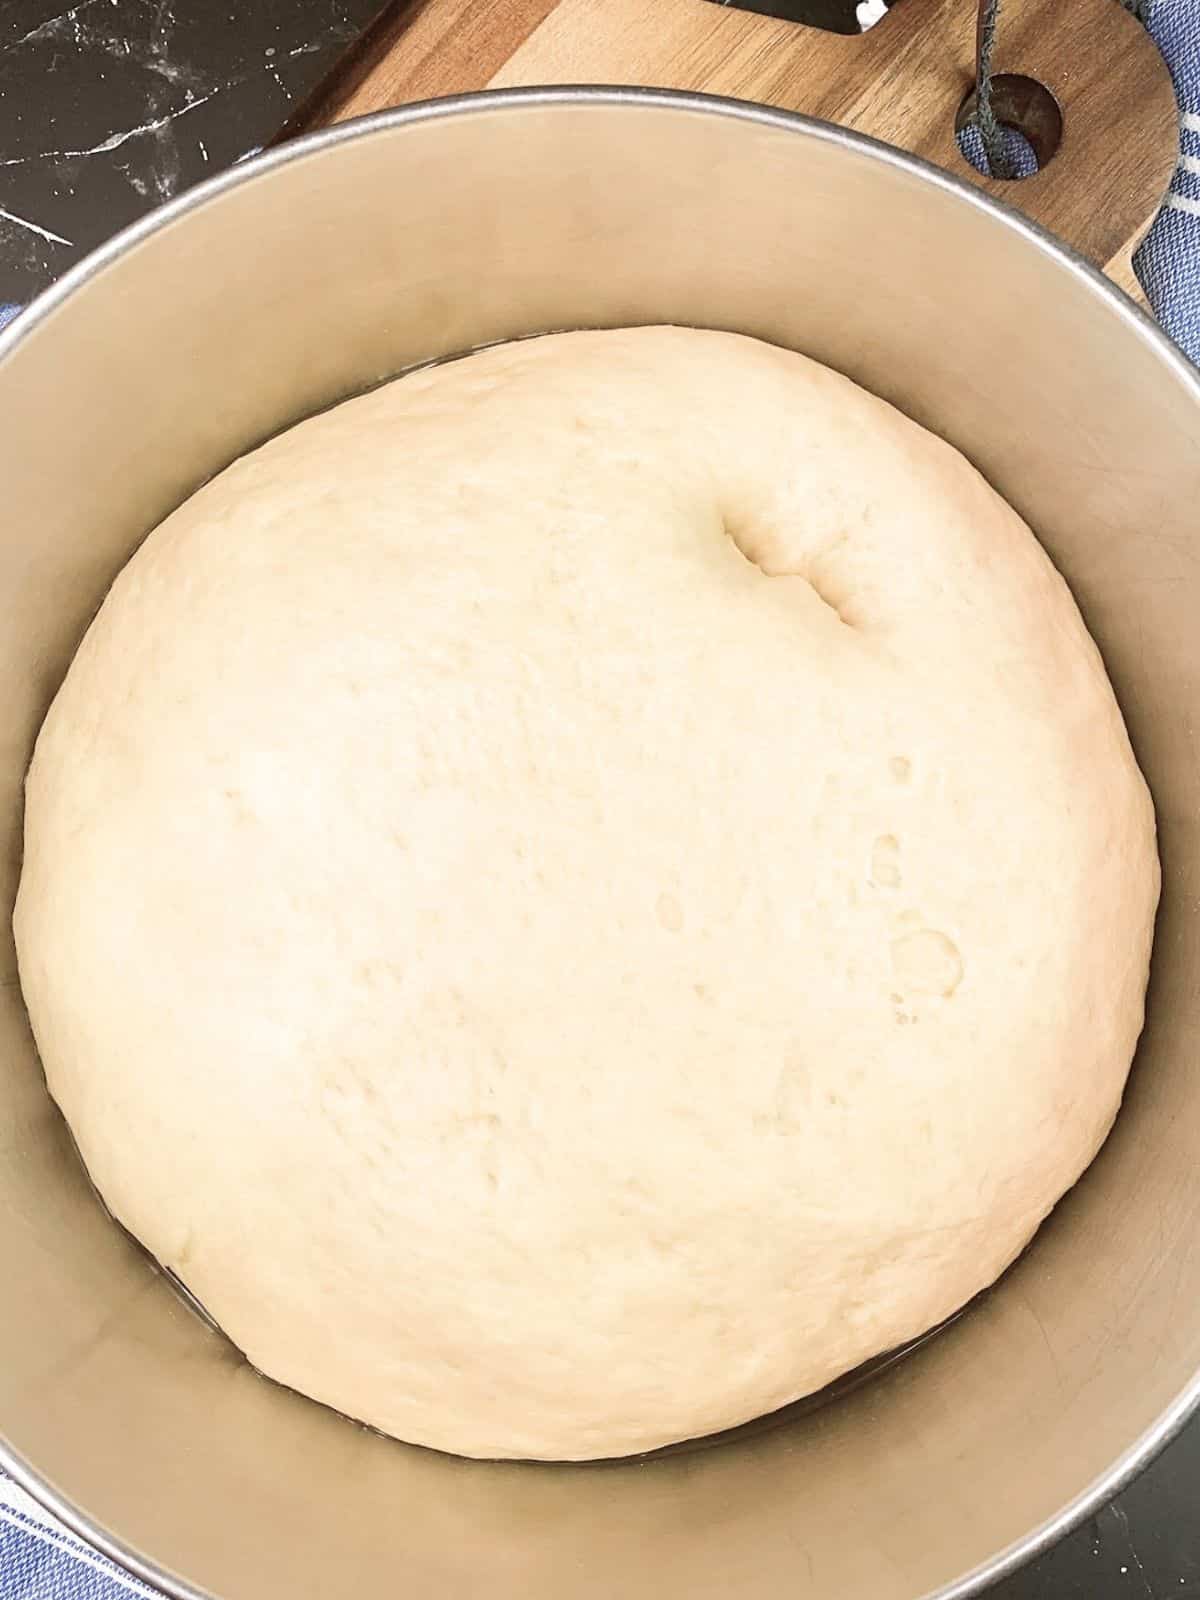 bread dough risen in bowl.